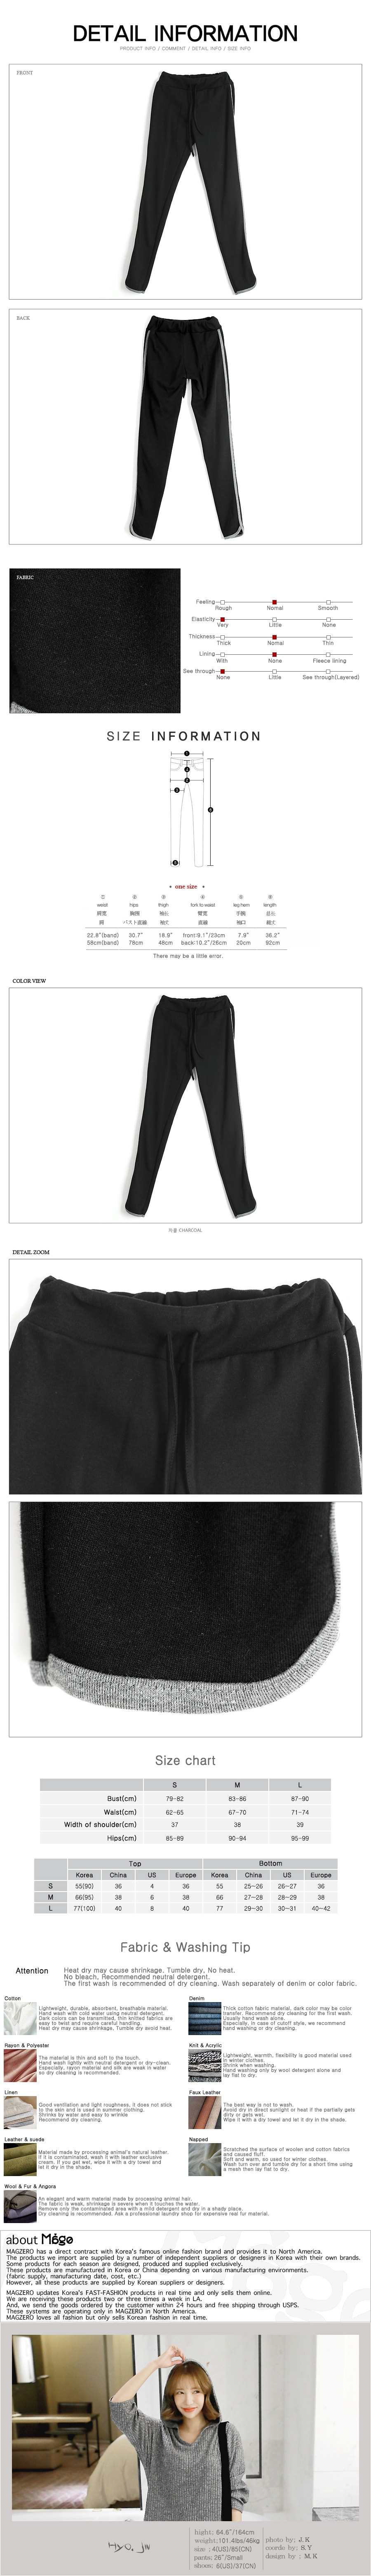 [韩国正品] MAGZERO 宽松编织运动外套 #炭灰 + 运动紧身裤  #黑色 两件套 One Size(S-M) [免费配送]